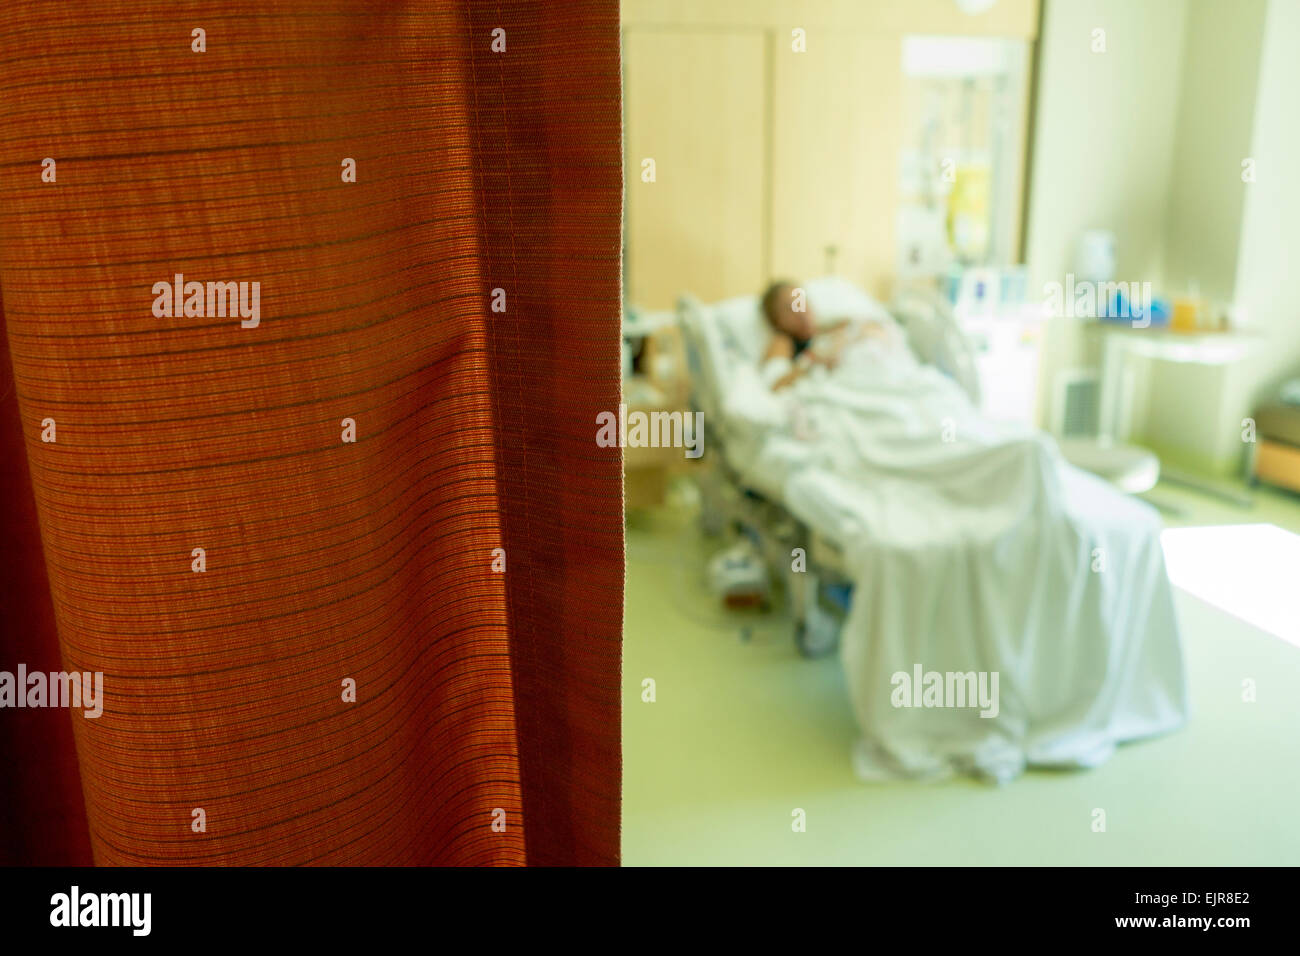 Vue de flou artistique Caucasian woman laying in hospital bed Banque D'Images